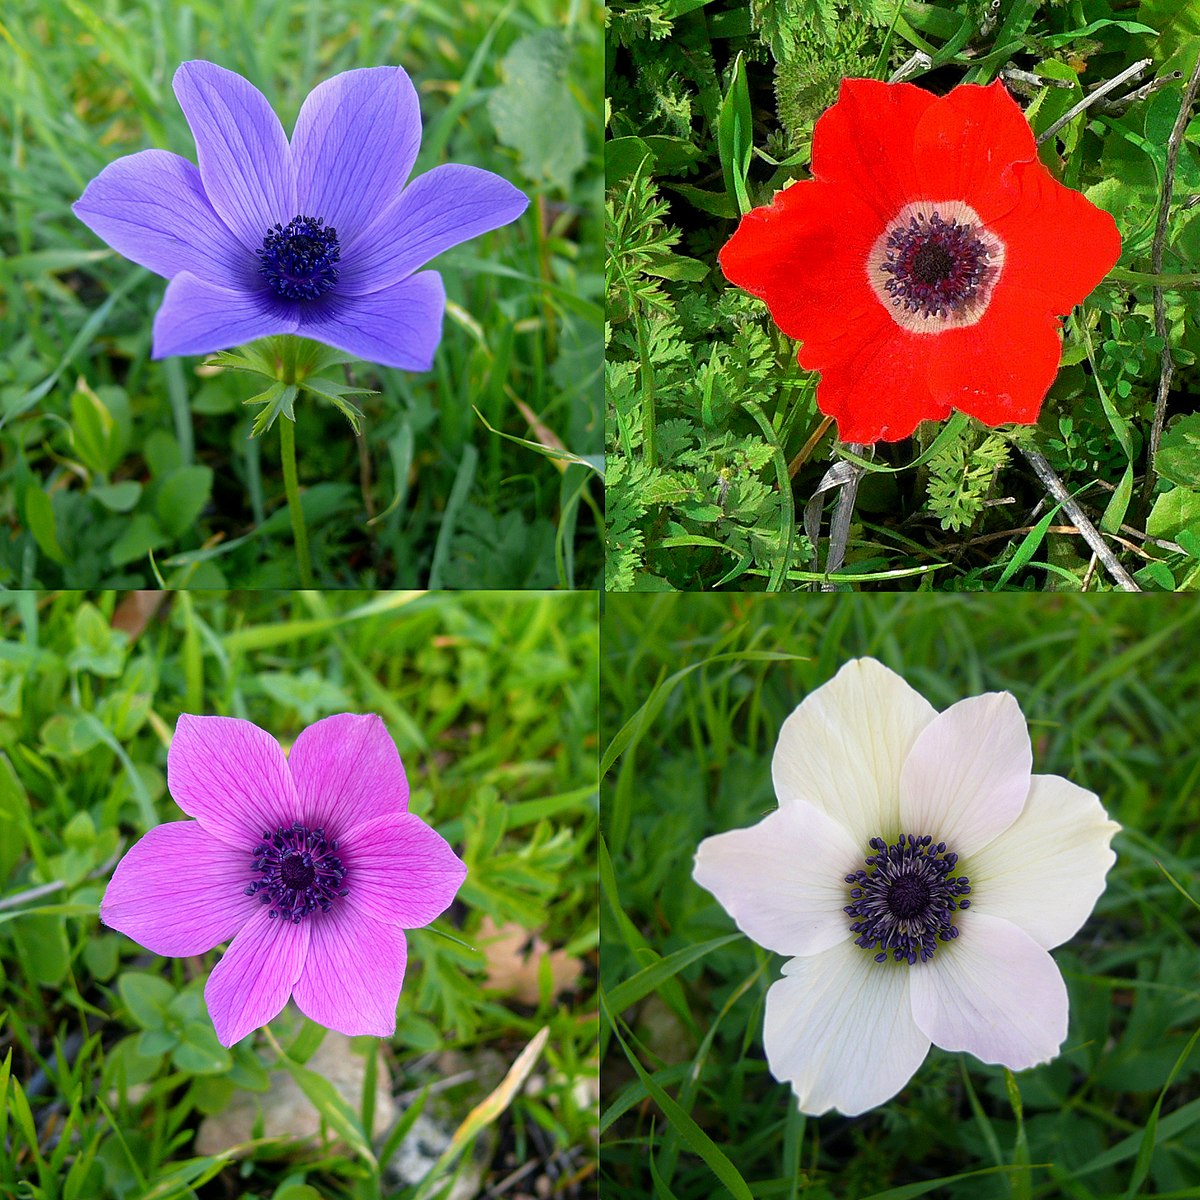 گل آنمون تاجدار (Poppy Anemone)نام علمی: (Anemone coronaria)